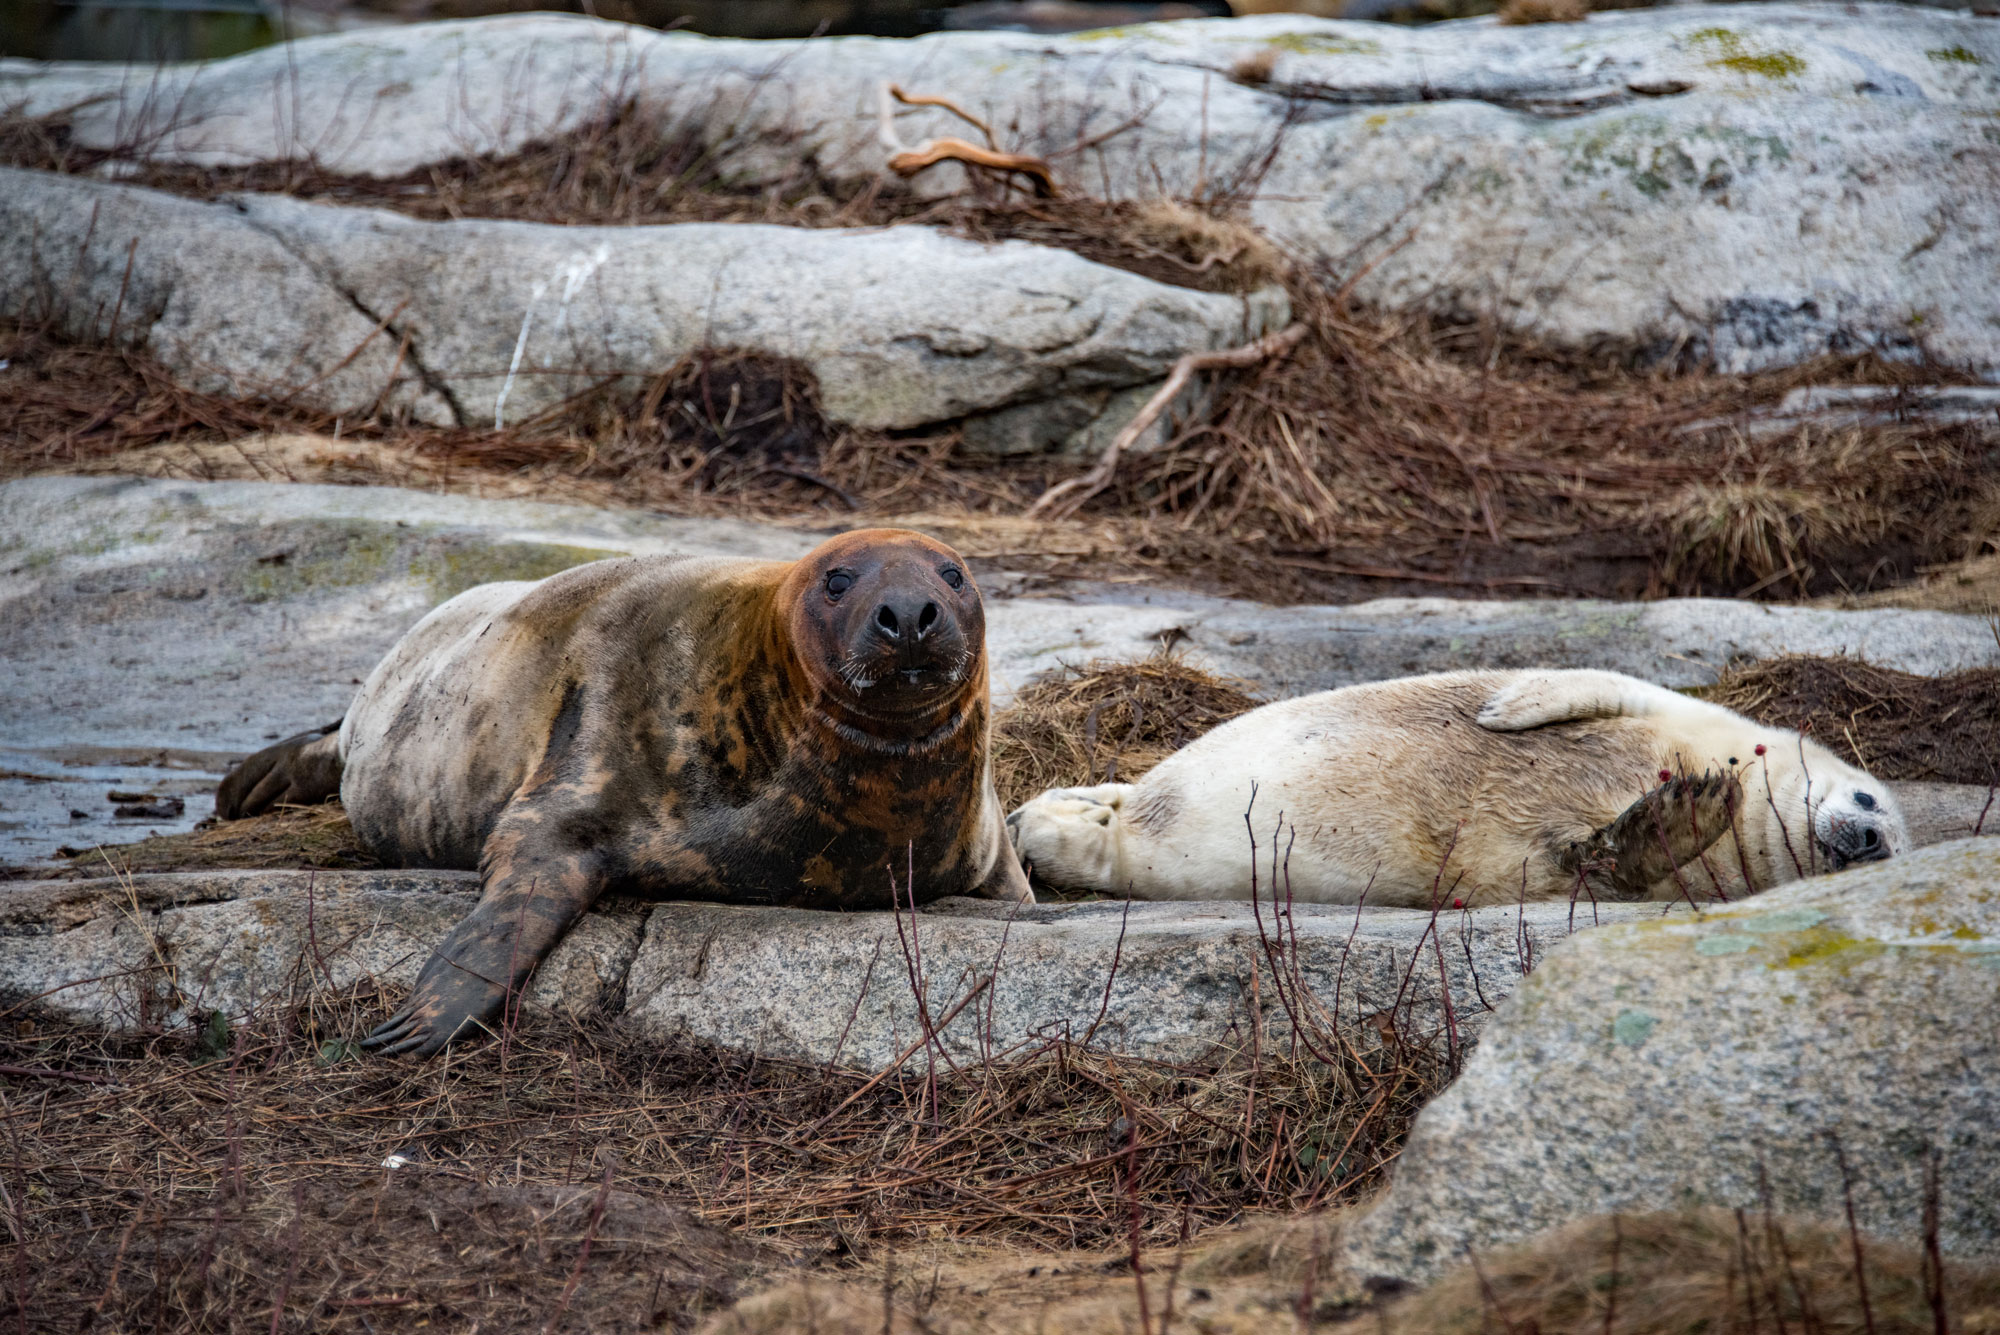 Two Gray Seals sunbathing on rocks.